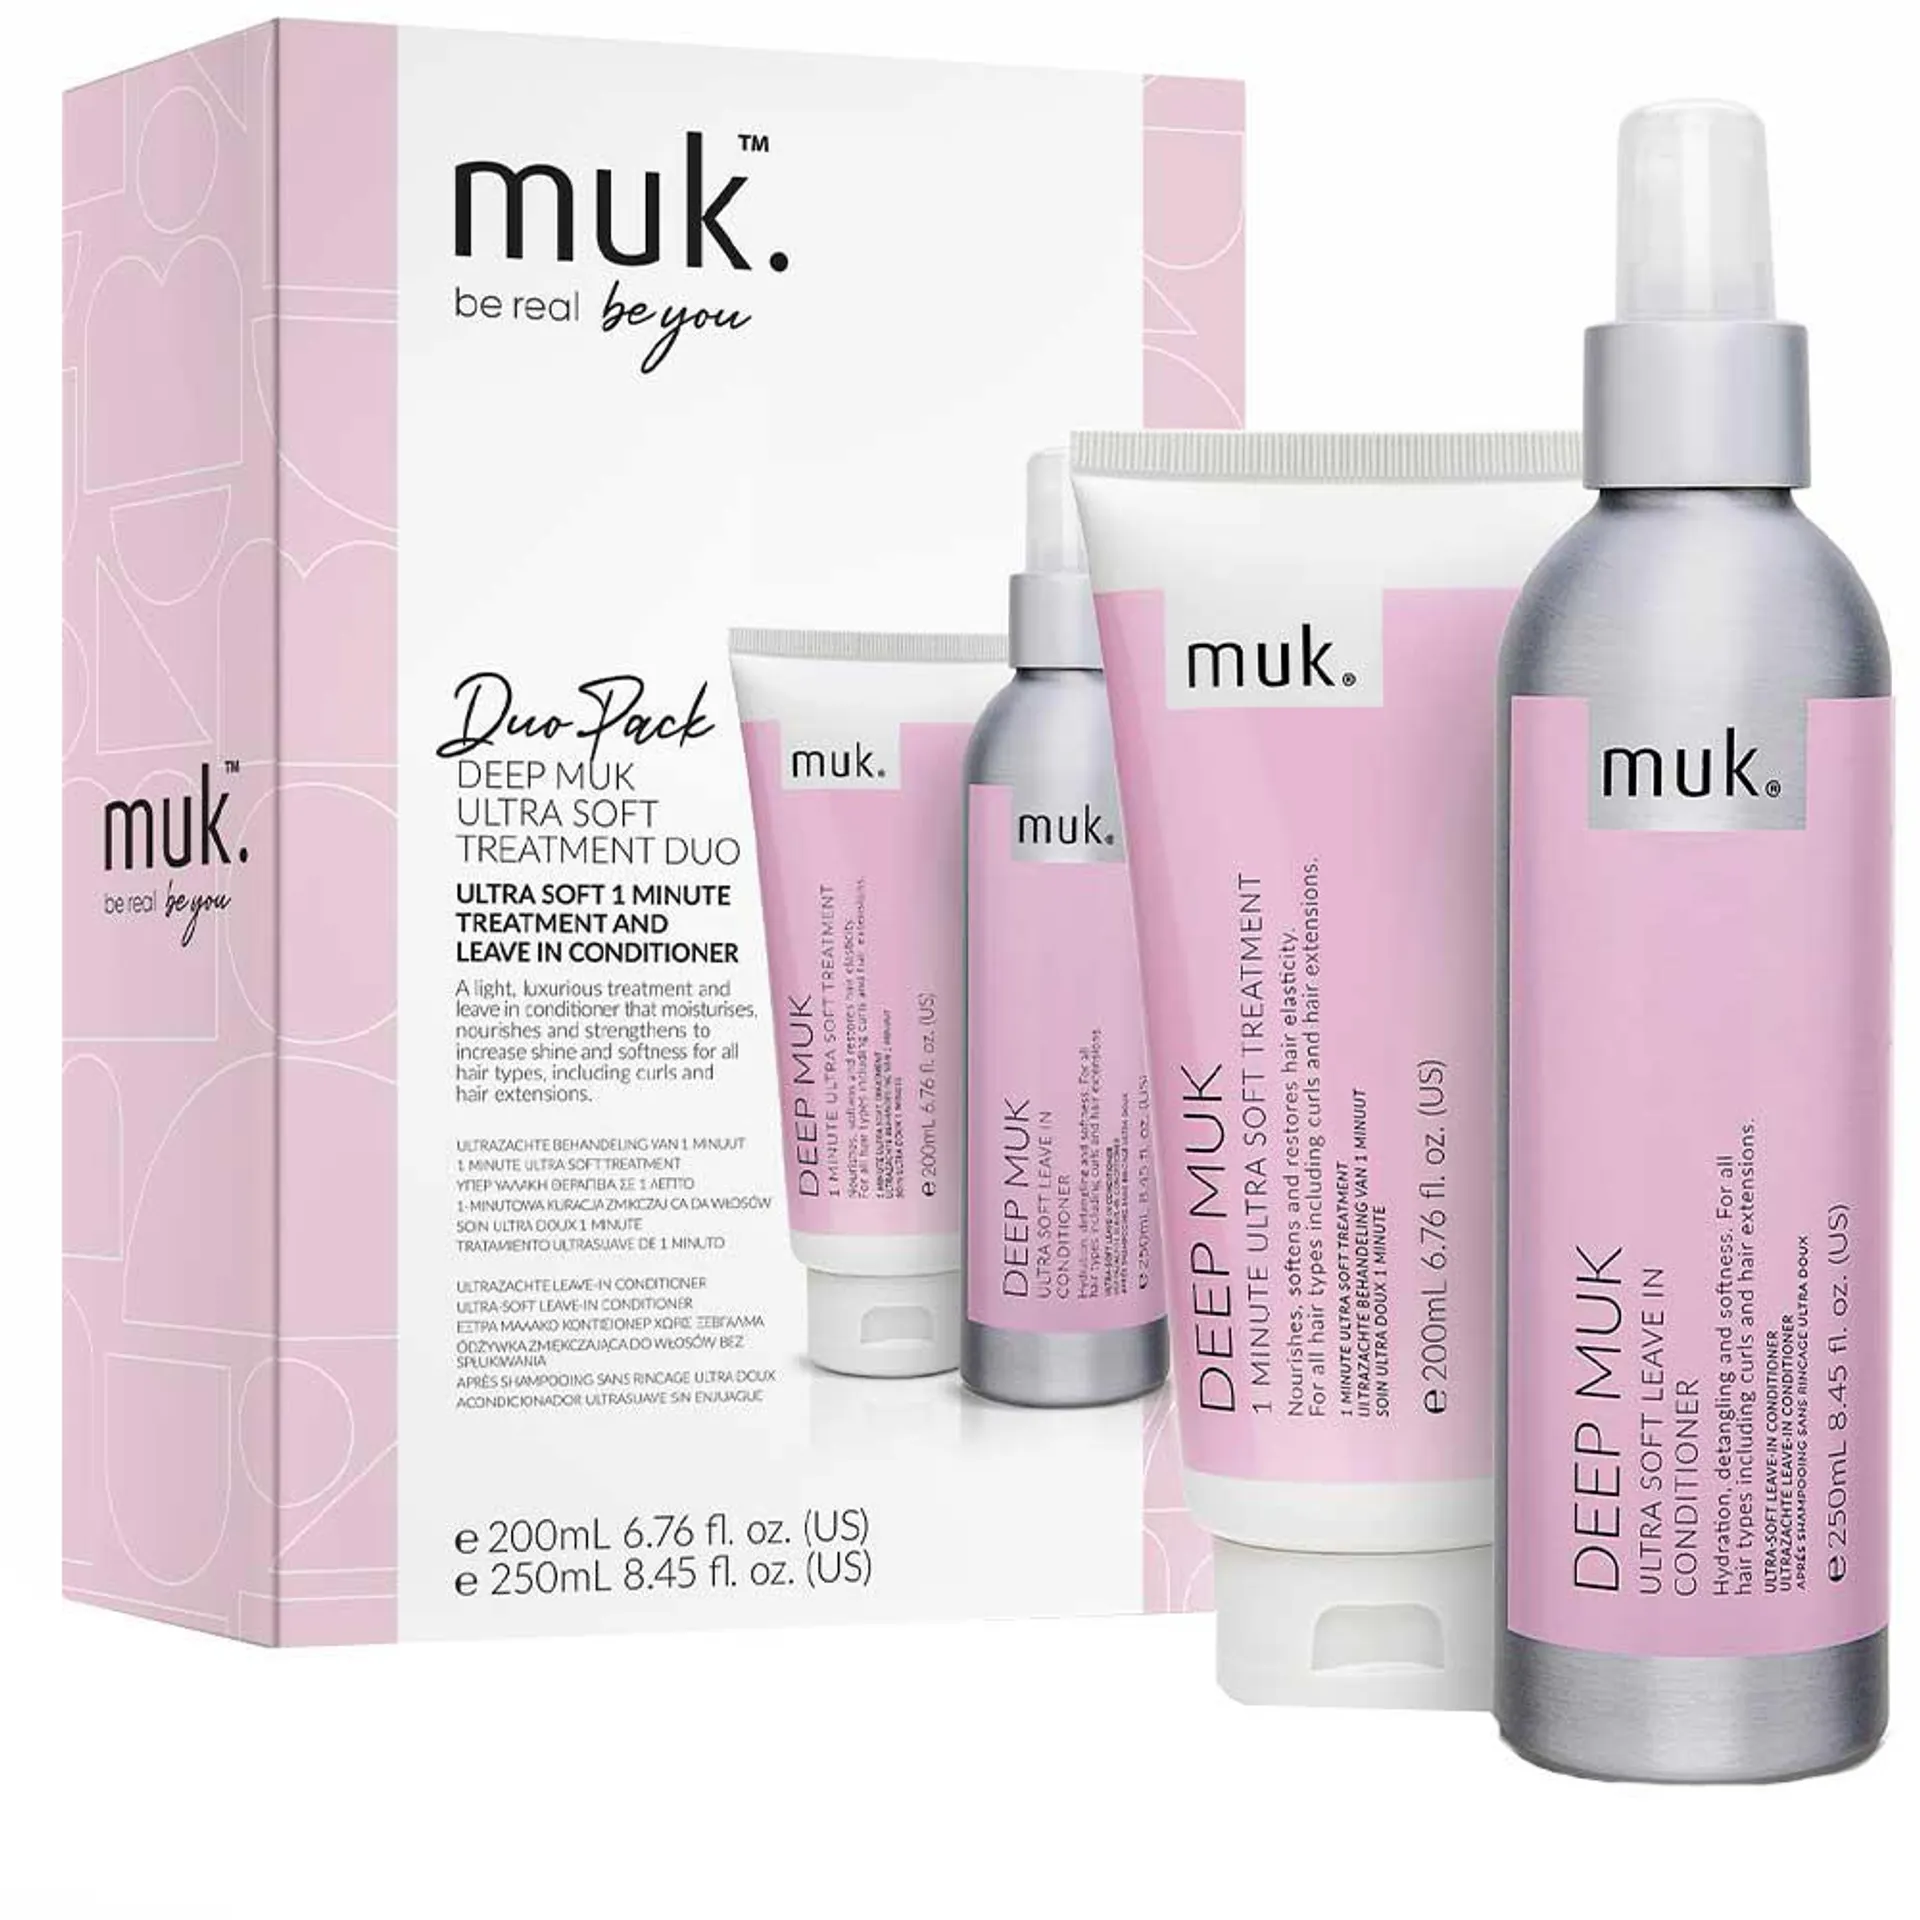 Deep Muk Ultra Soft Treatment Duo